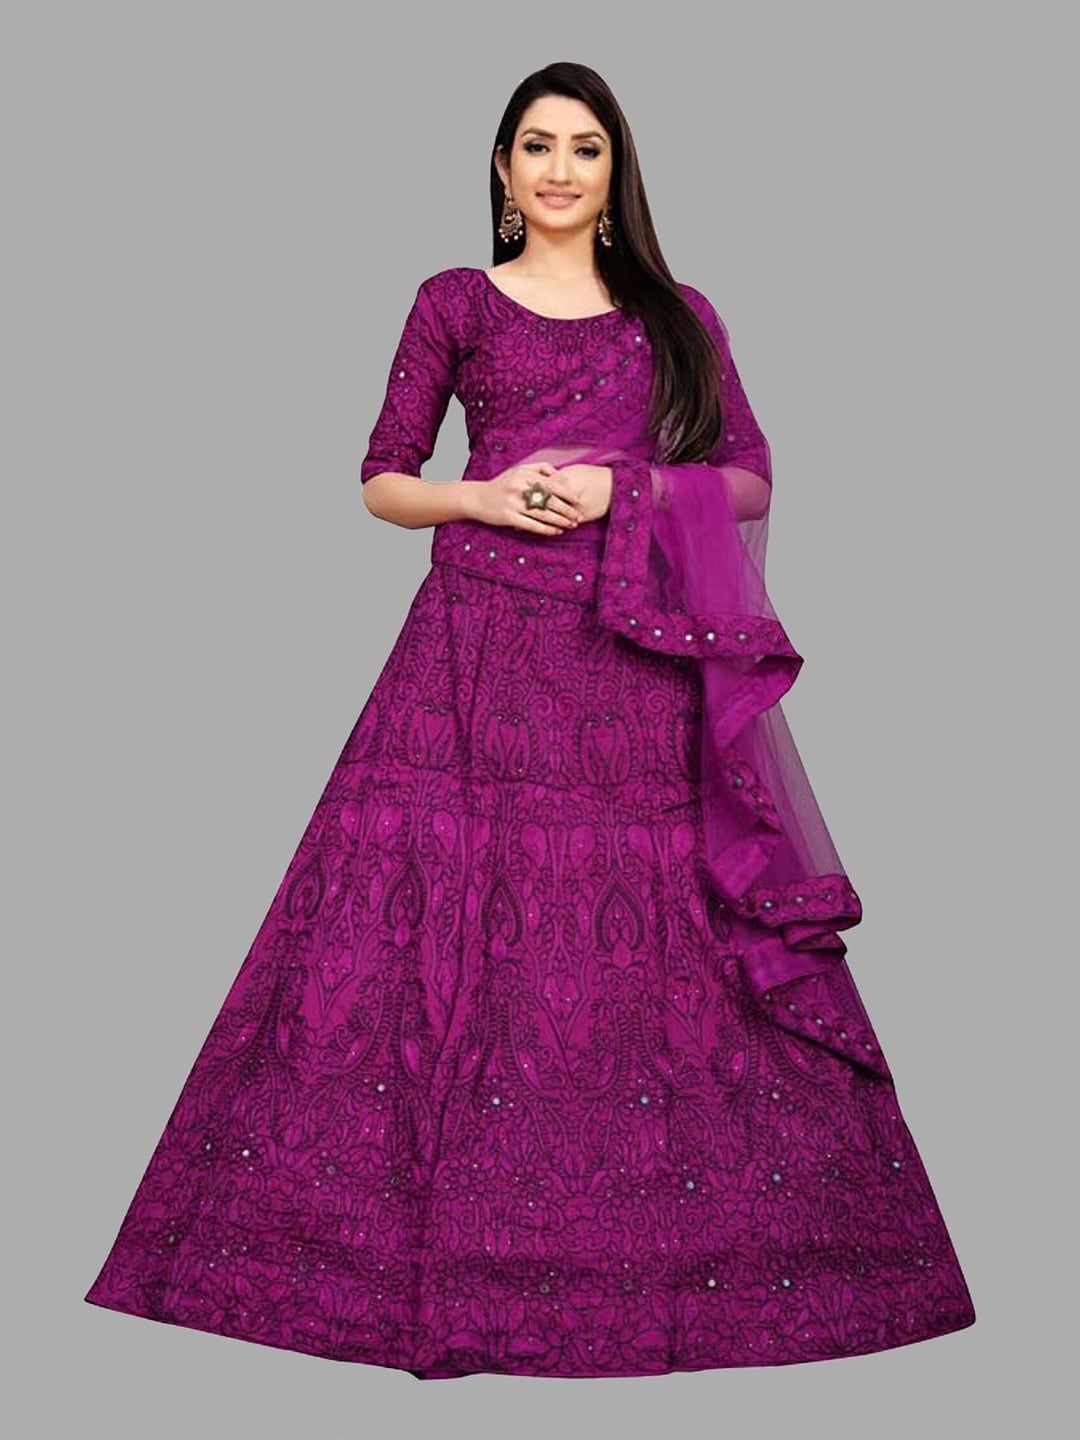 Fashionuma Purple Embroidered Semi-Stitched Lehenga & Blouse With Dupatta Price in India